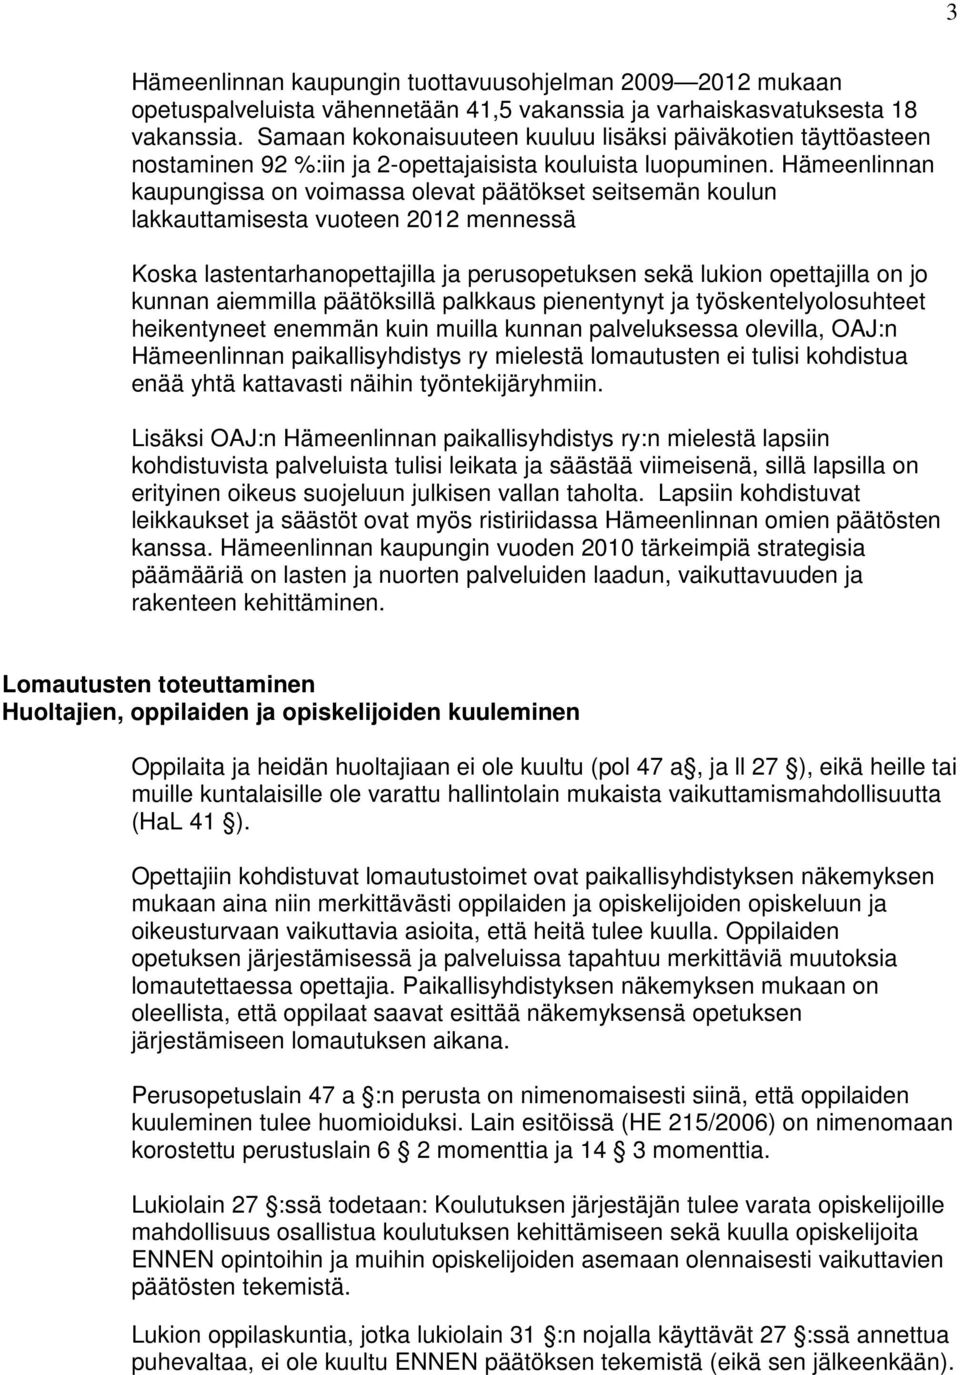 Hämeenlinnan kaupungissa on voimassa olevat päätökset seitsemän koulun lakkauttamisesta vuoteen 2012 mennessä Koska lastentarhanopettajilla ja perusopetuksen sekä lukion opettajilla on jo kunnan